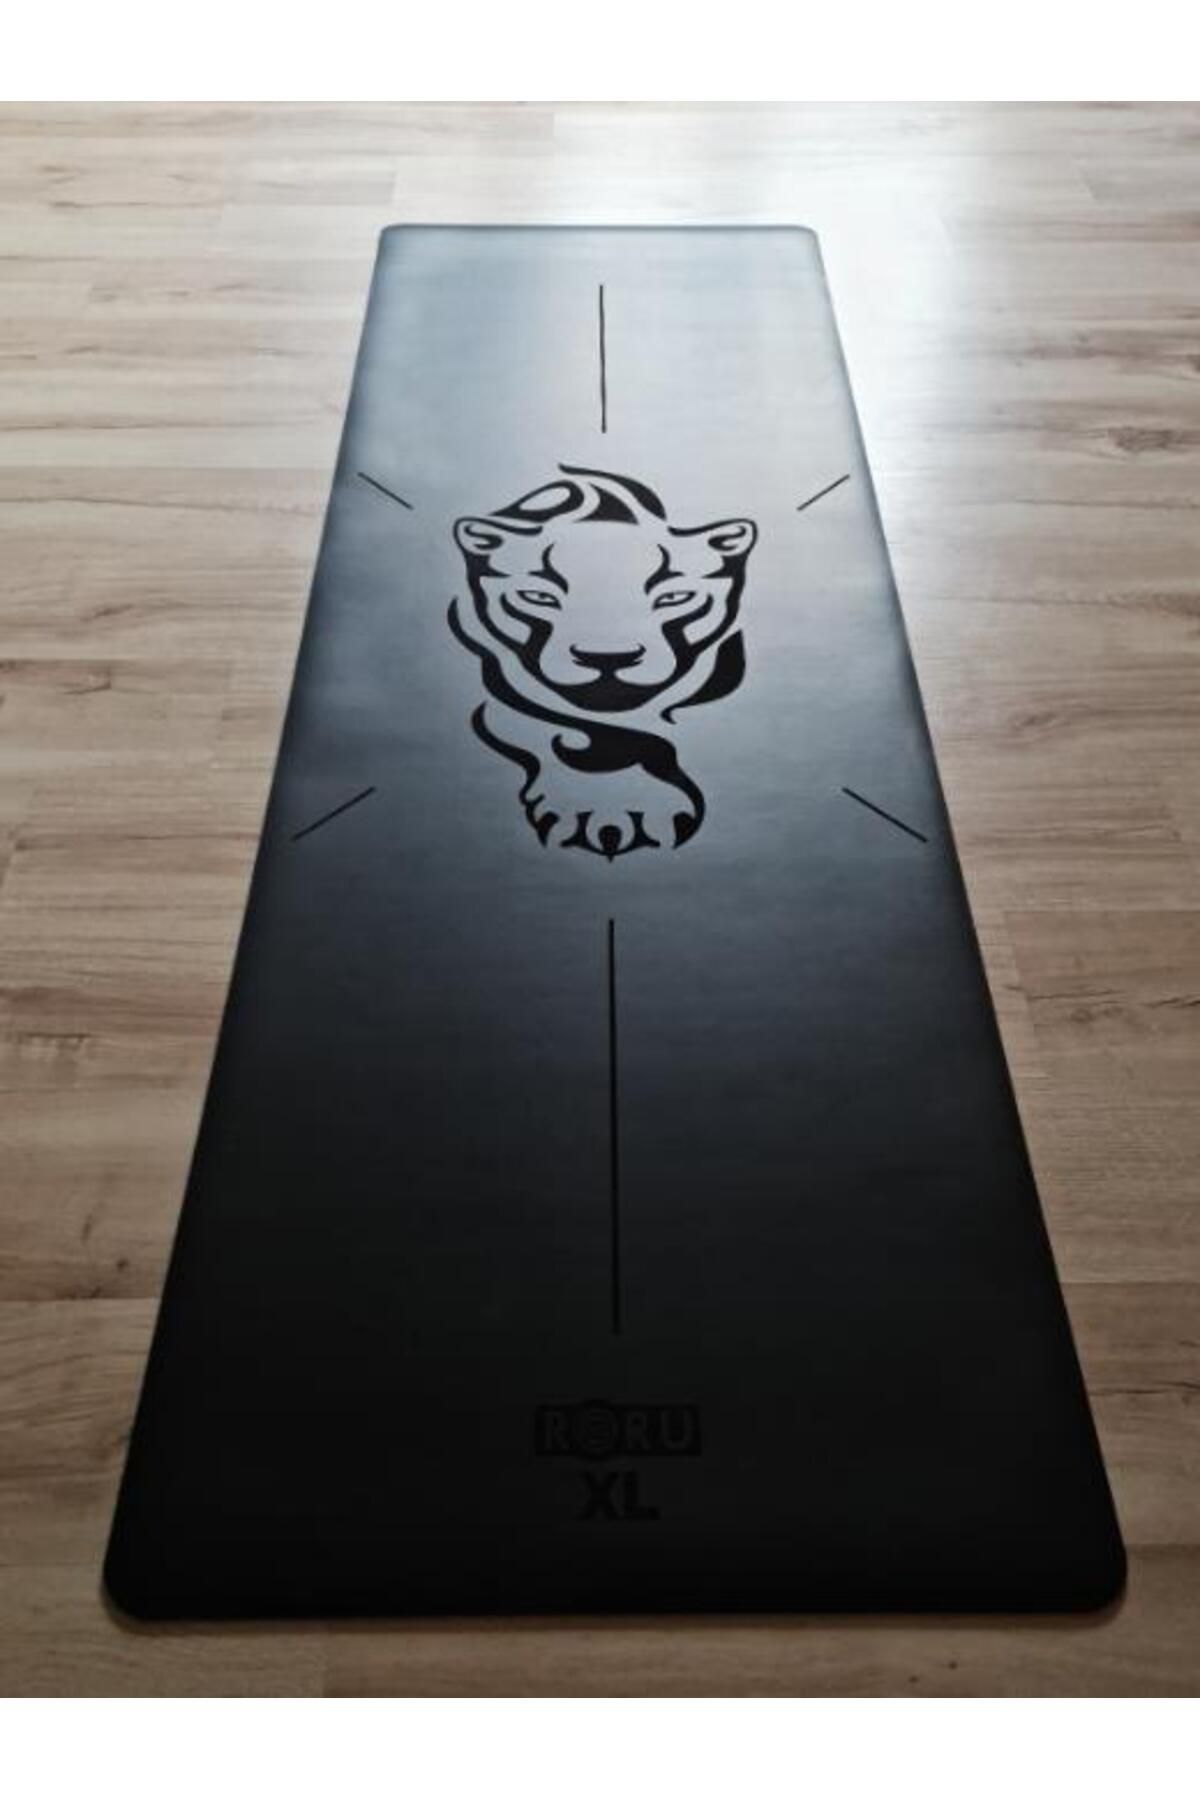 Roru Sun Series Professional Yoga Mat Black 5mm Xl